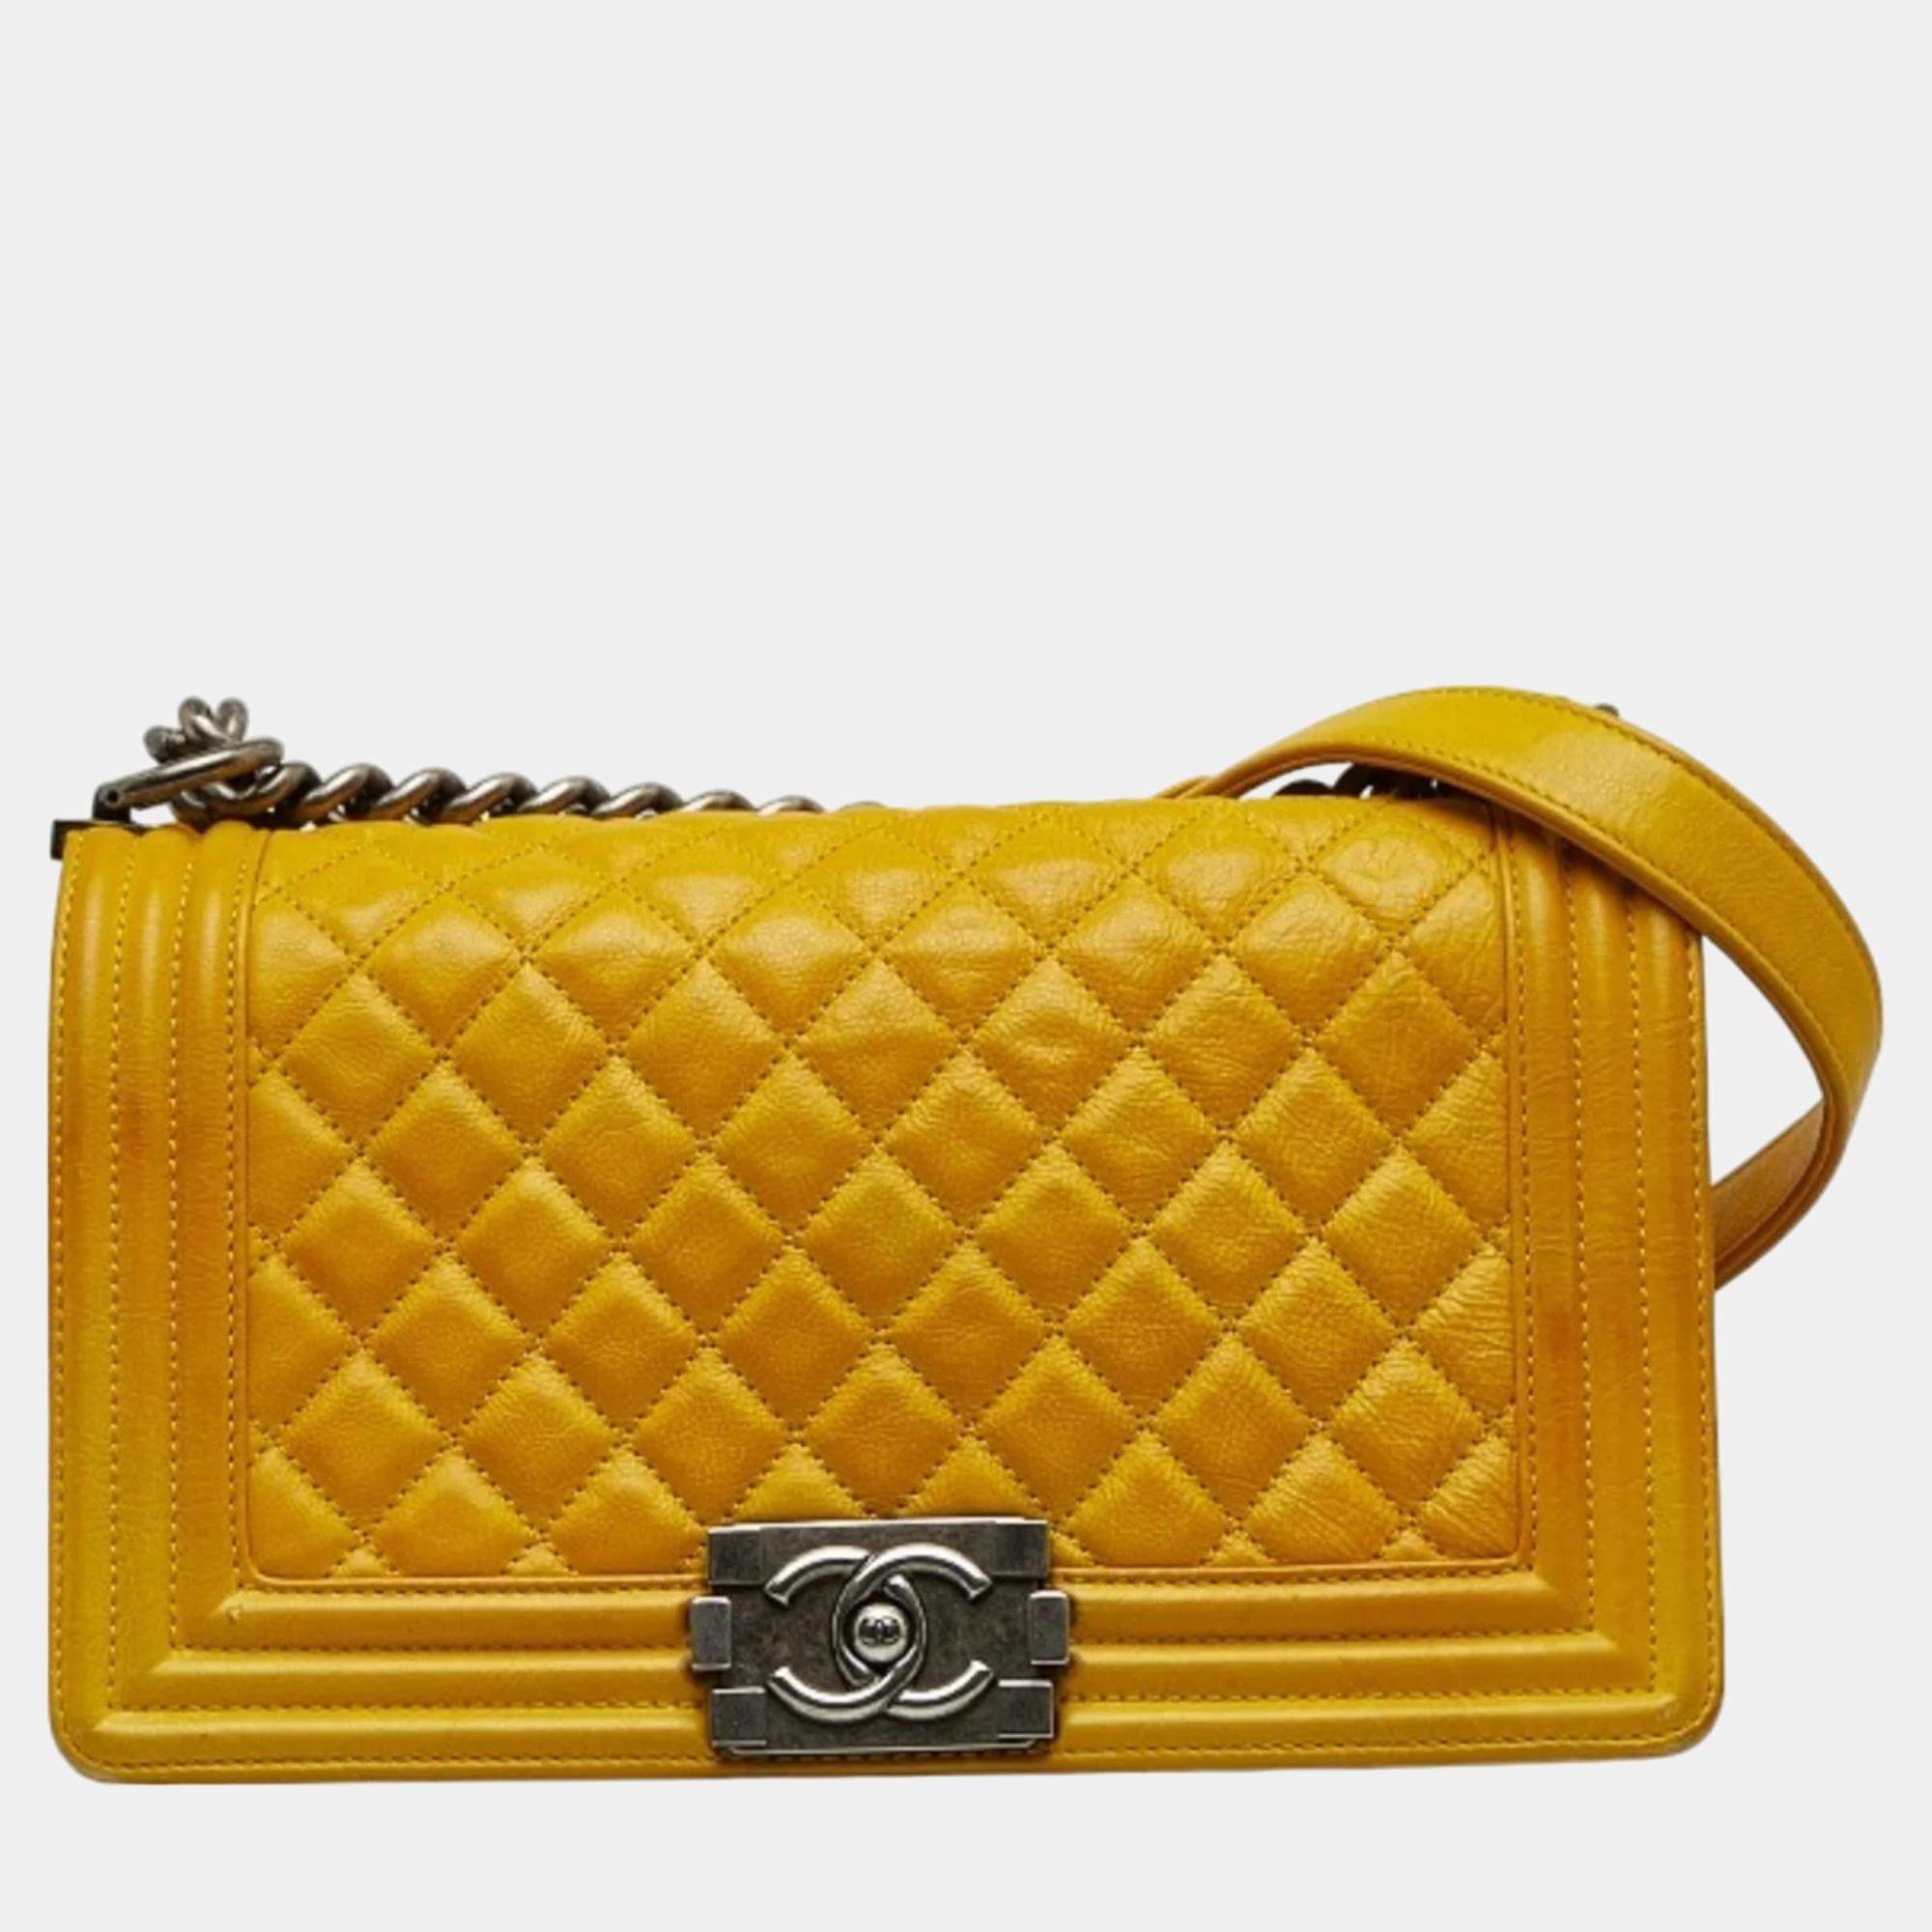 Chanel Yellow Caviar Leather Medium Boy Shoulder Bag